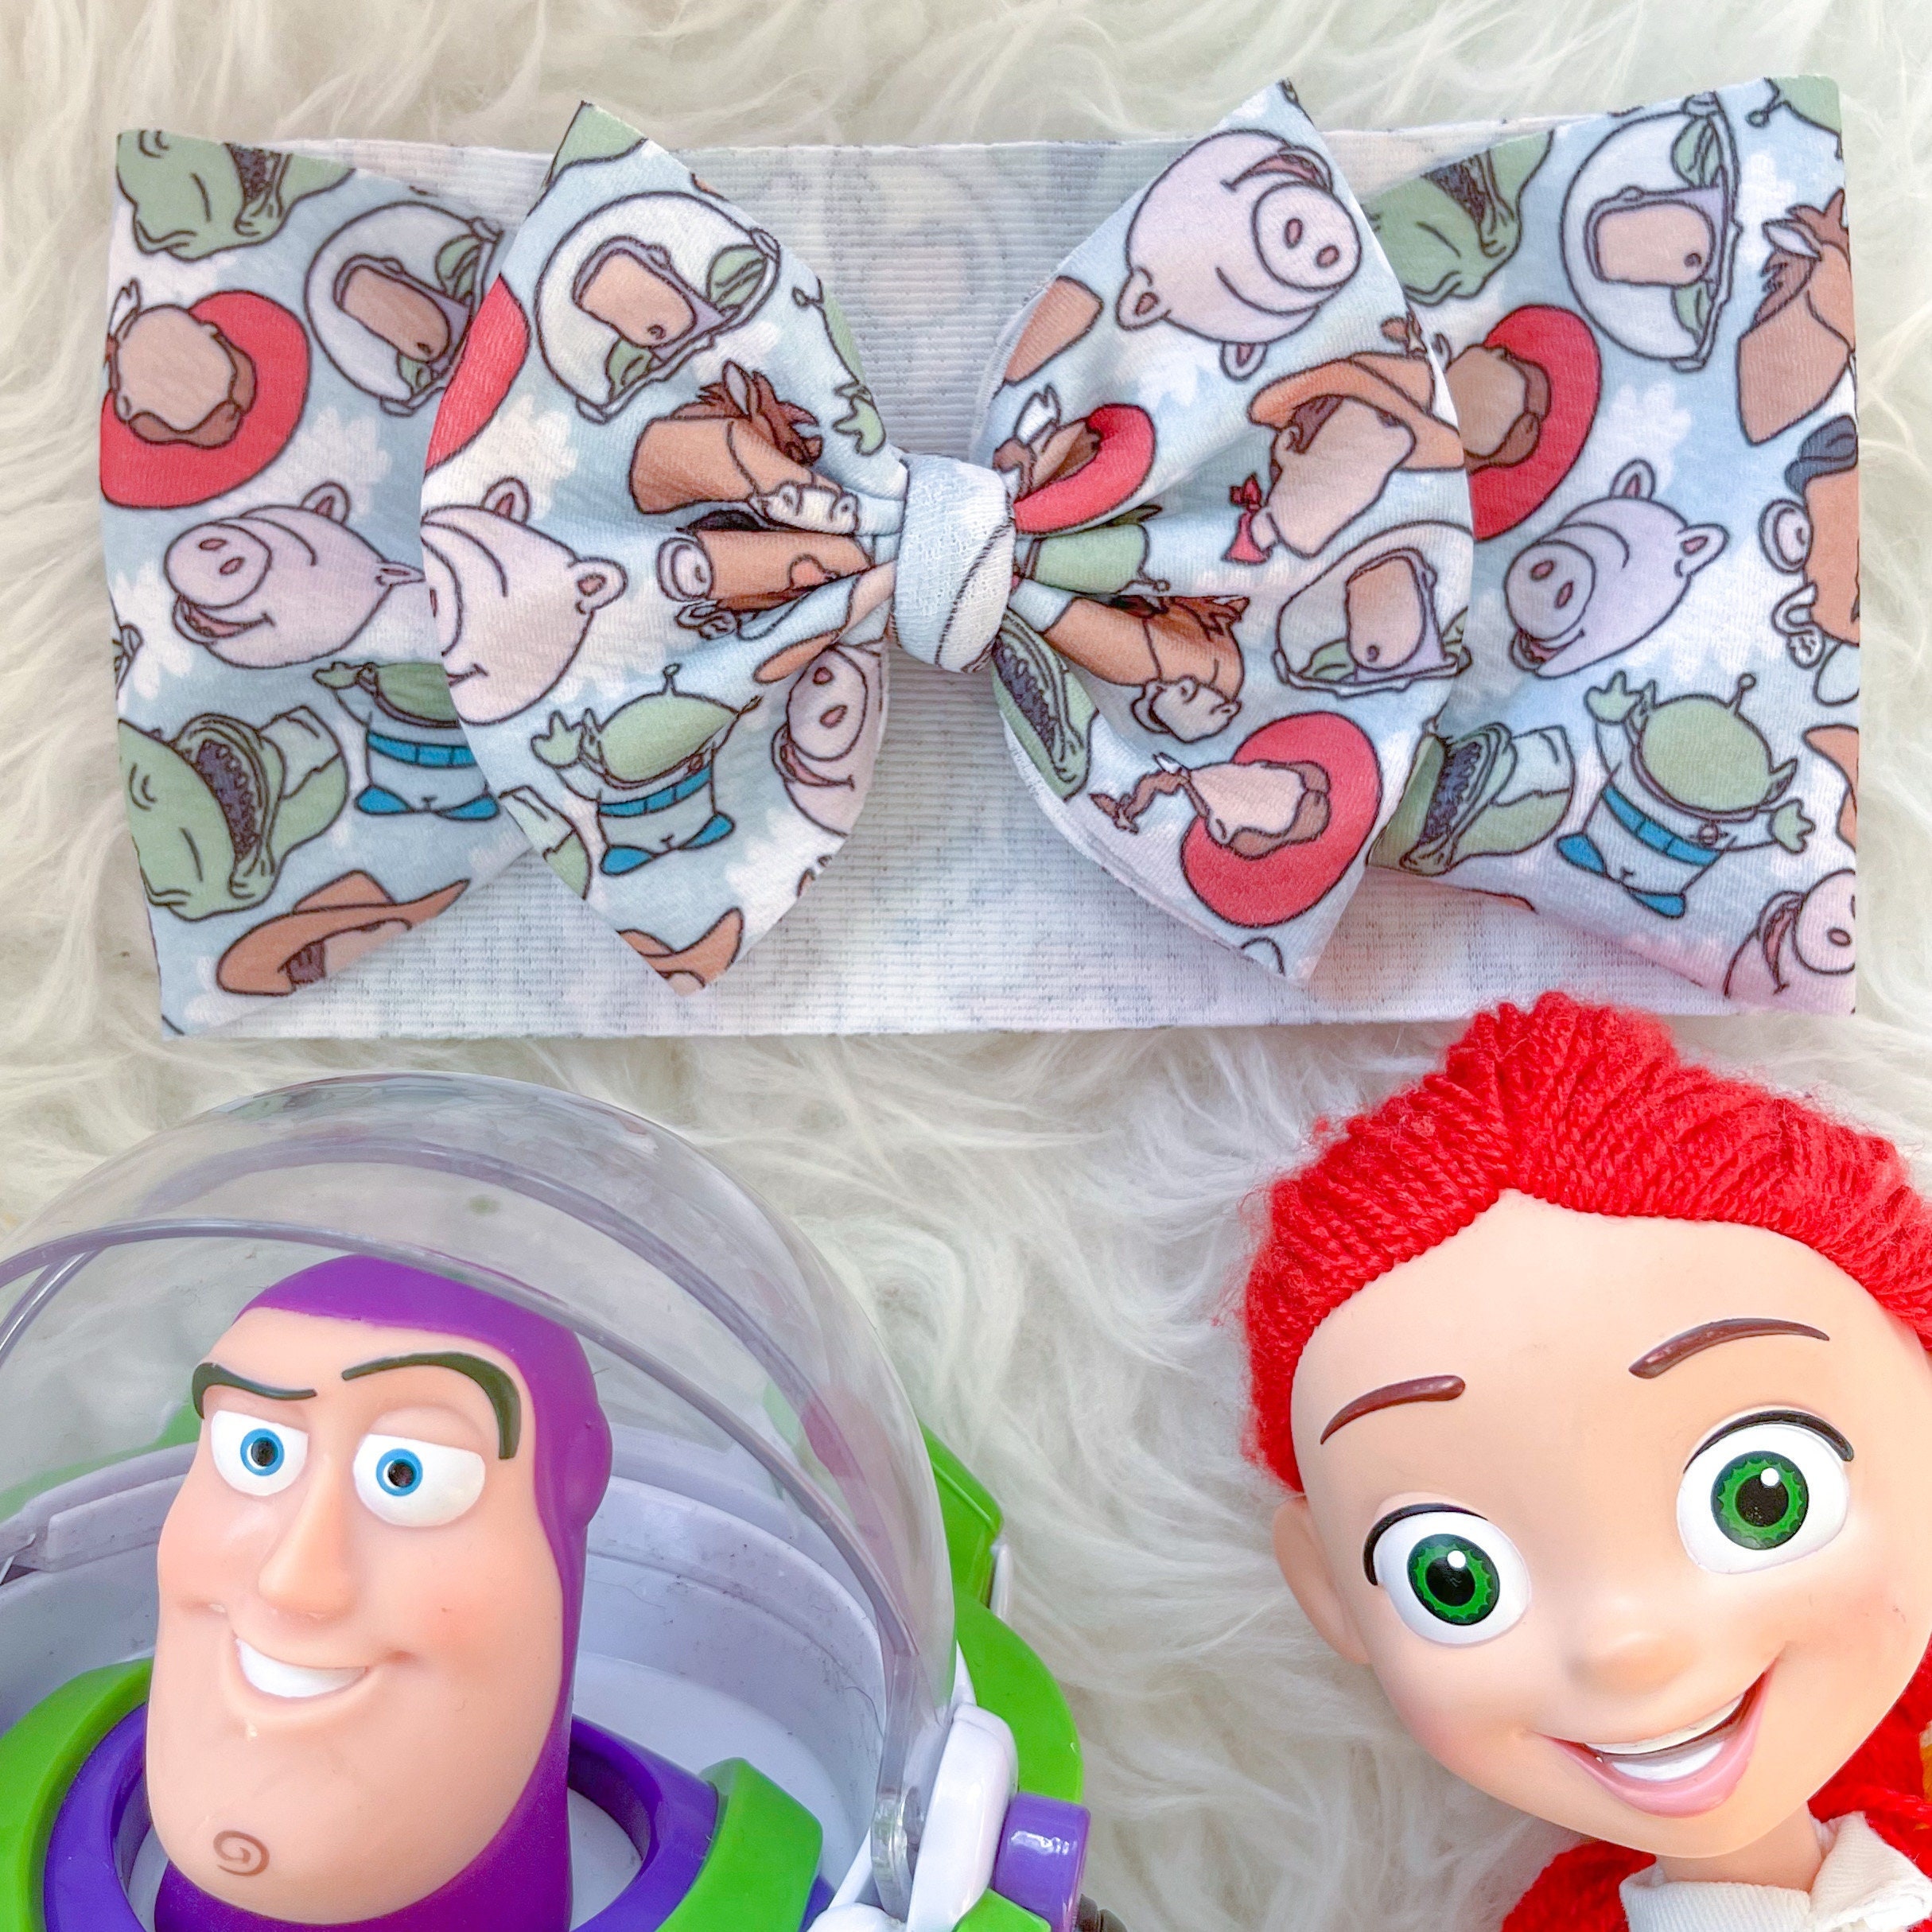 Pixar Anime Alien Bandas De Pelo Para Las Niñas Toy Story Accesorios Para  El Cabello Mujeres Lentejuelas Arco Diadema Niños Buzz Lightyear Hairband  Regalo